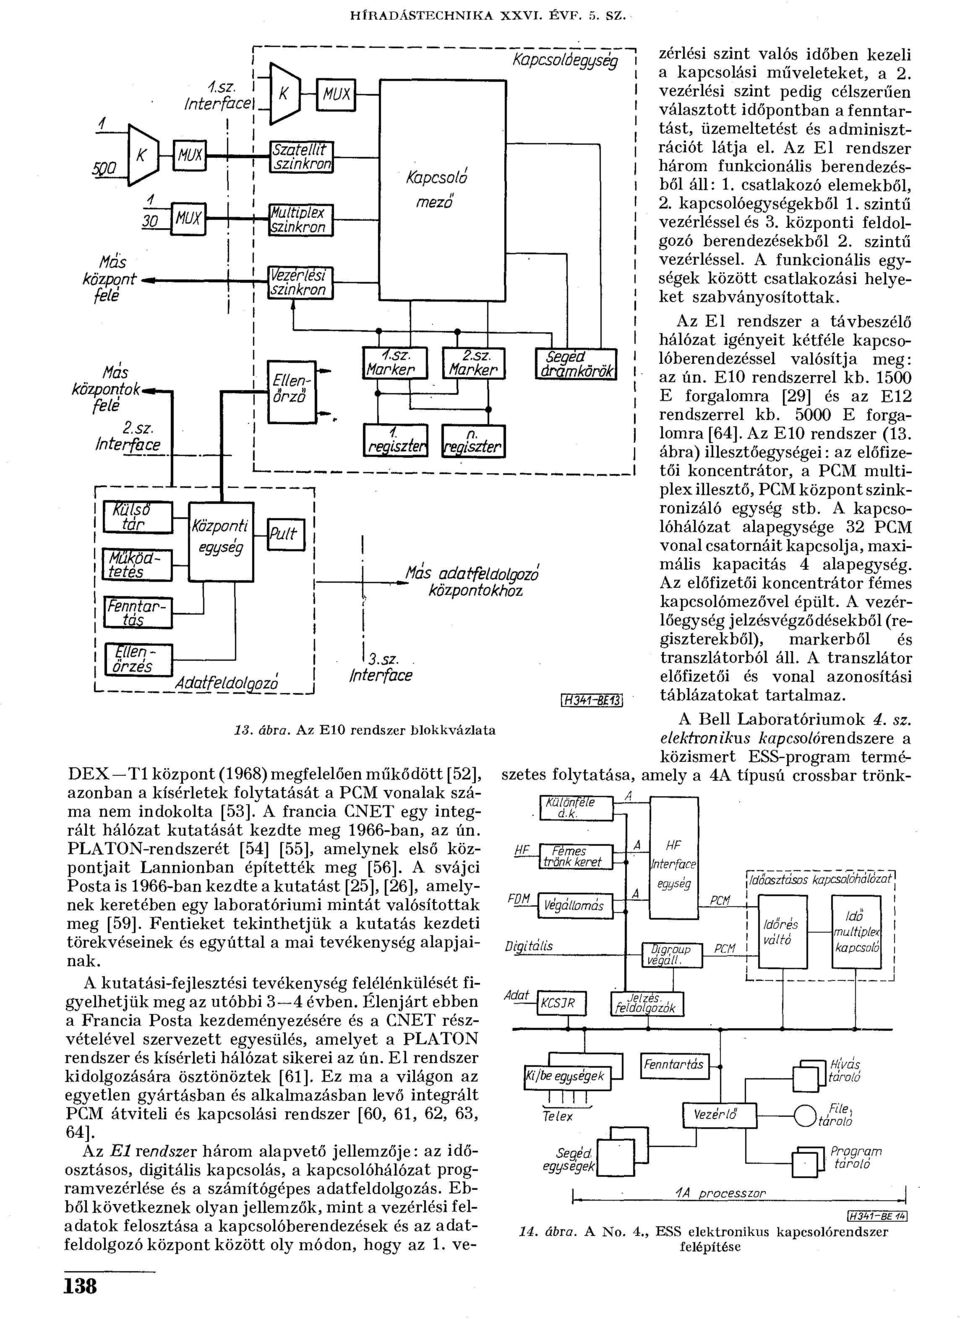 A francia CNET egy integrált hálózat kutatását kezdte meg 1966-ban, az ún. PLATON-rendszerét [54] [55], amelynek első központjait Lannionban építették meg [56].